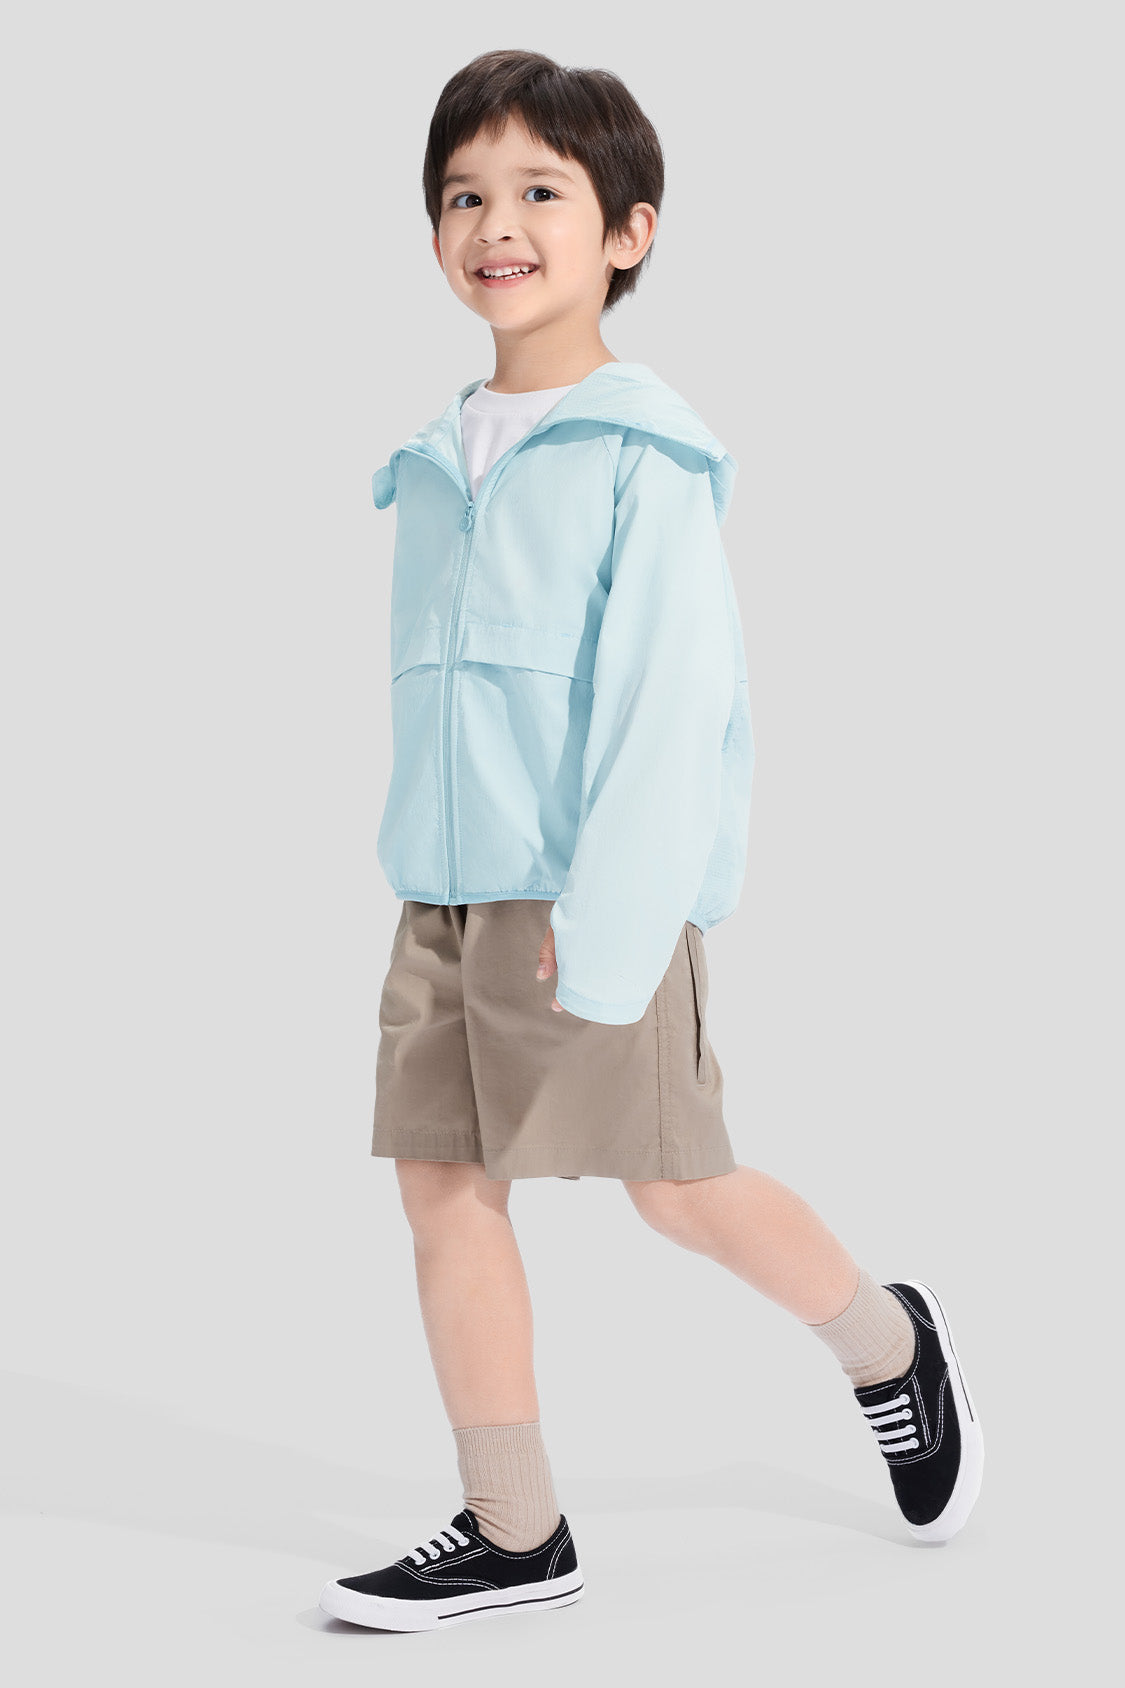 beneunder kids sports sunwear upf50 #color_misty blue